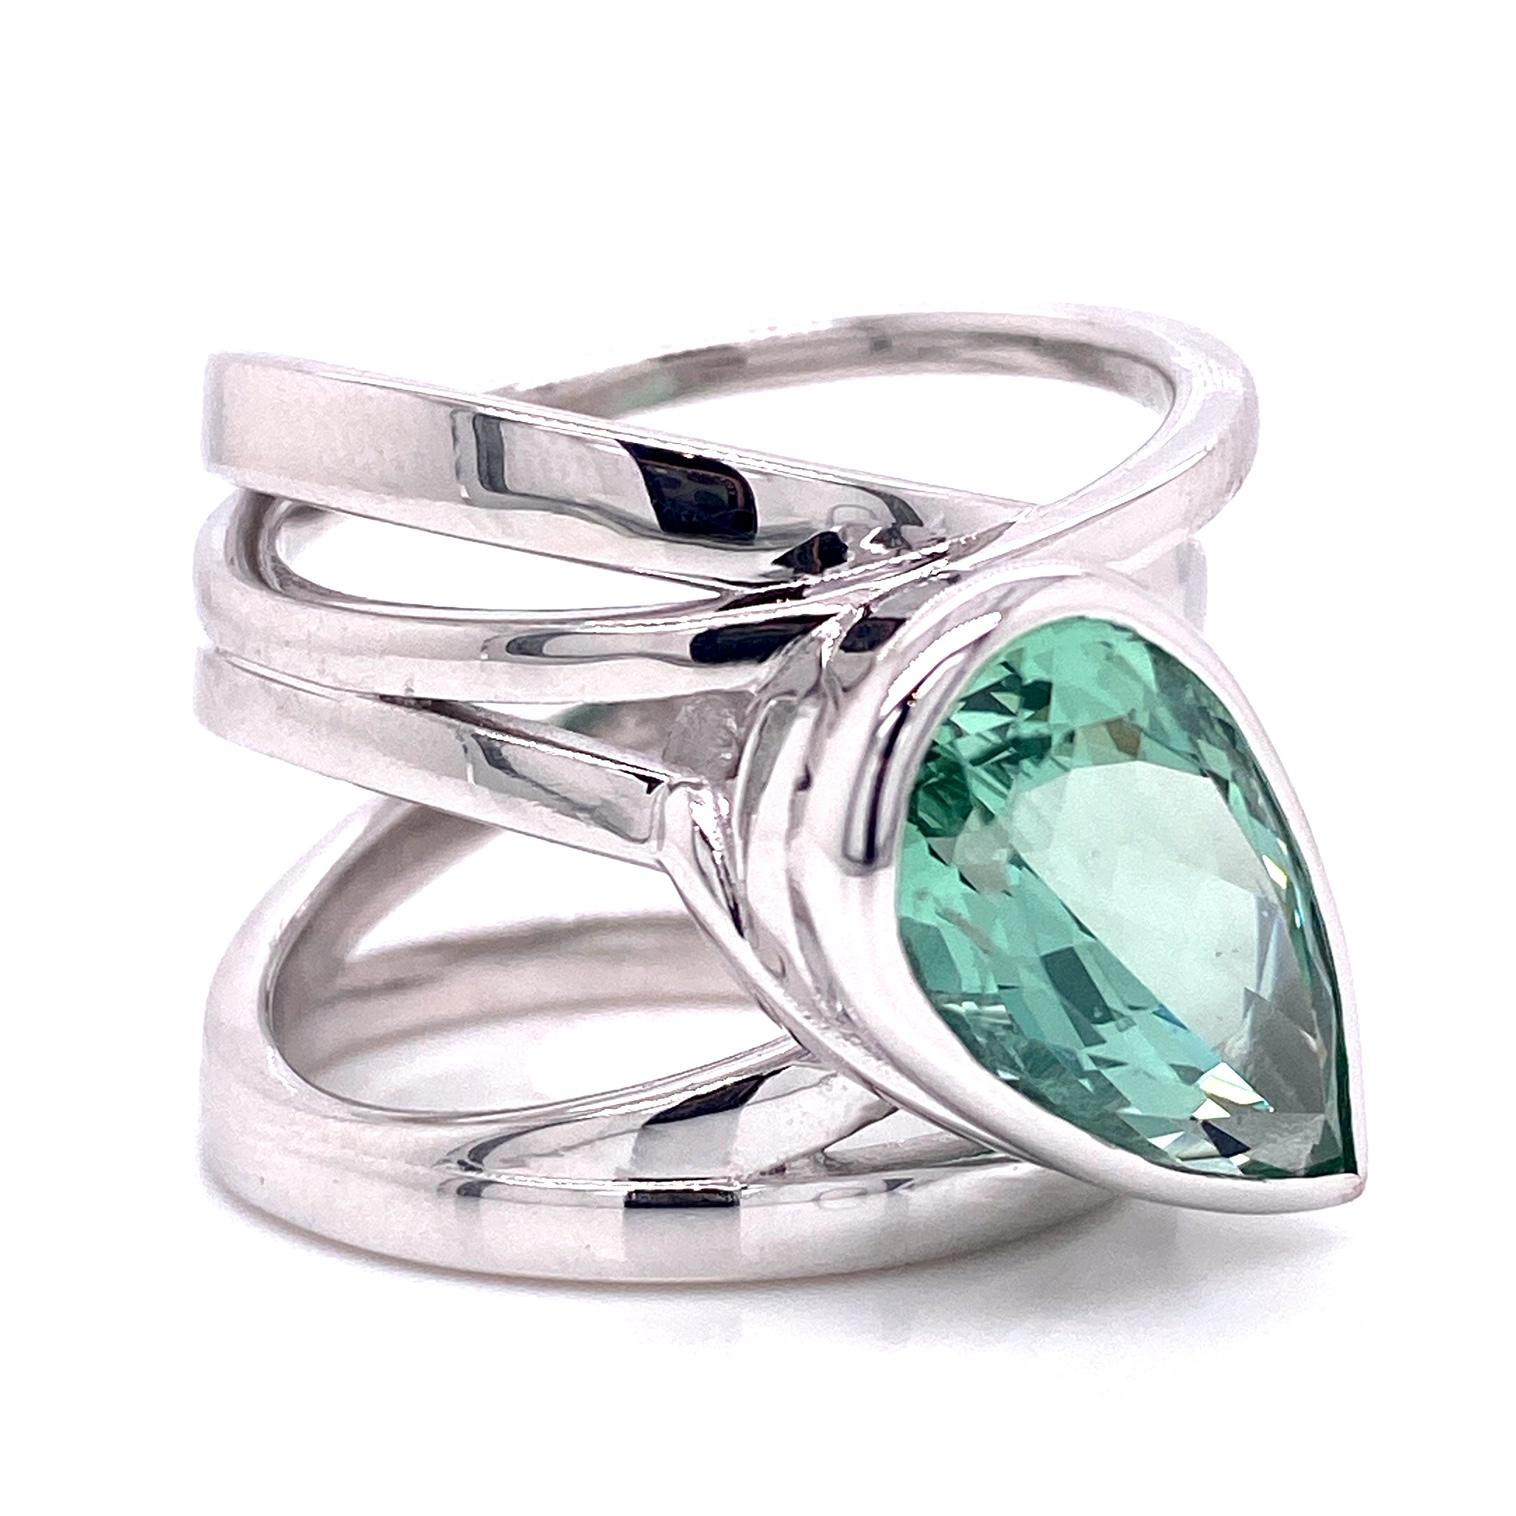 Ein 18k Weißgold Wrap-Stil Ring Lünette mit einem 4,88 Karat birnenförmigen grünen Beryll gesetzt. Dieser Ring wurde von llyn strong hergestellt und entworfen.